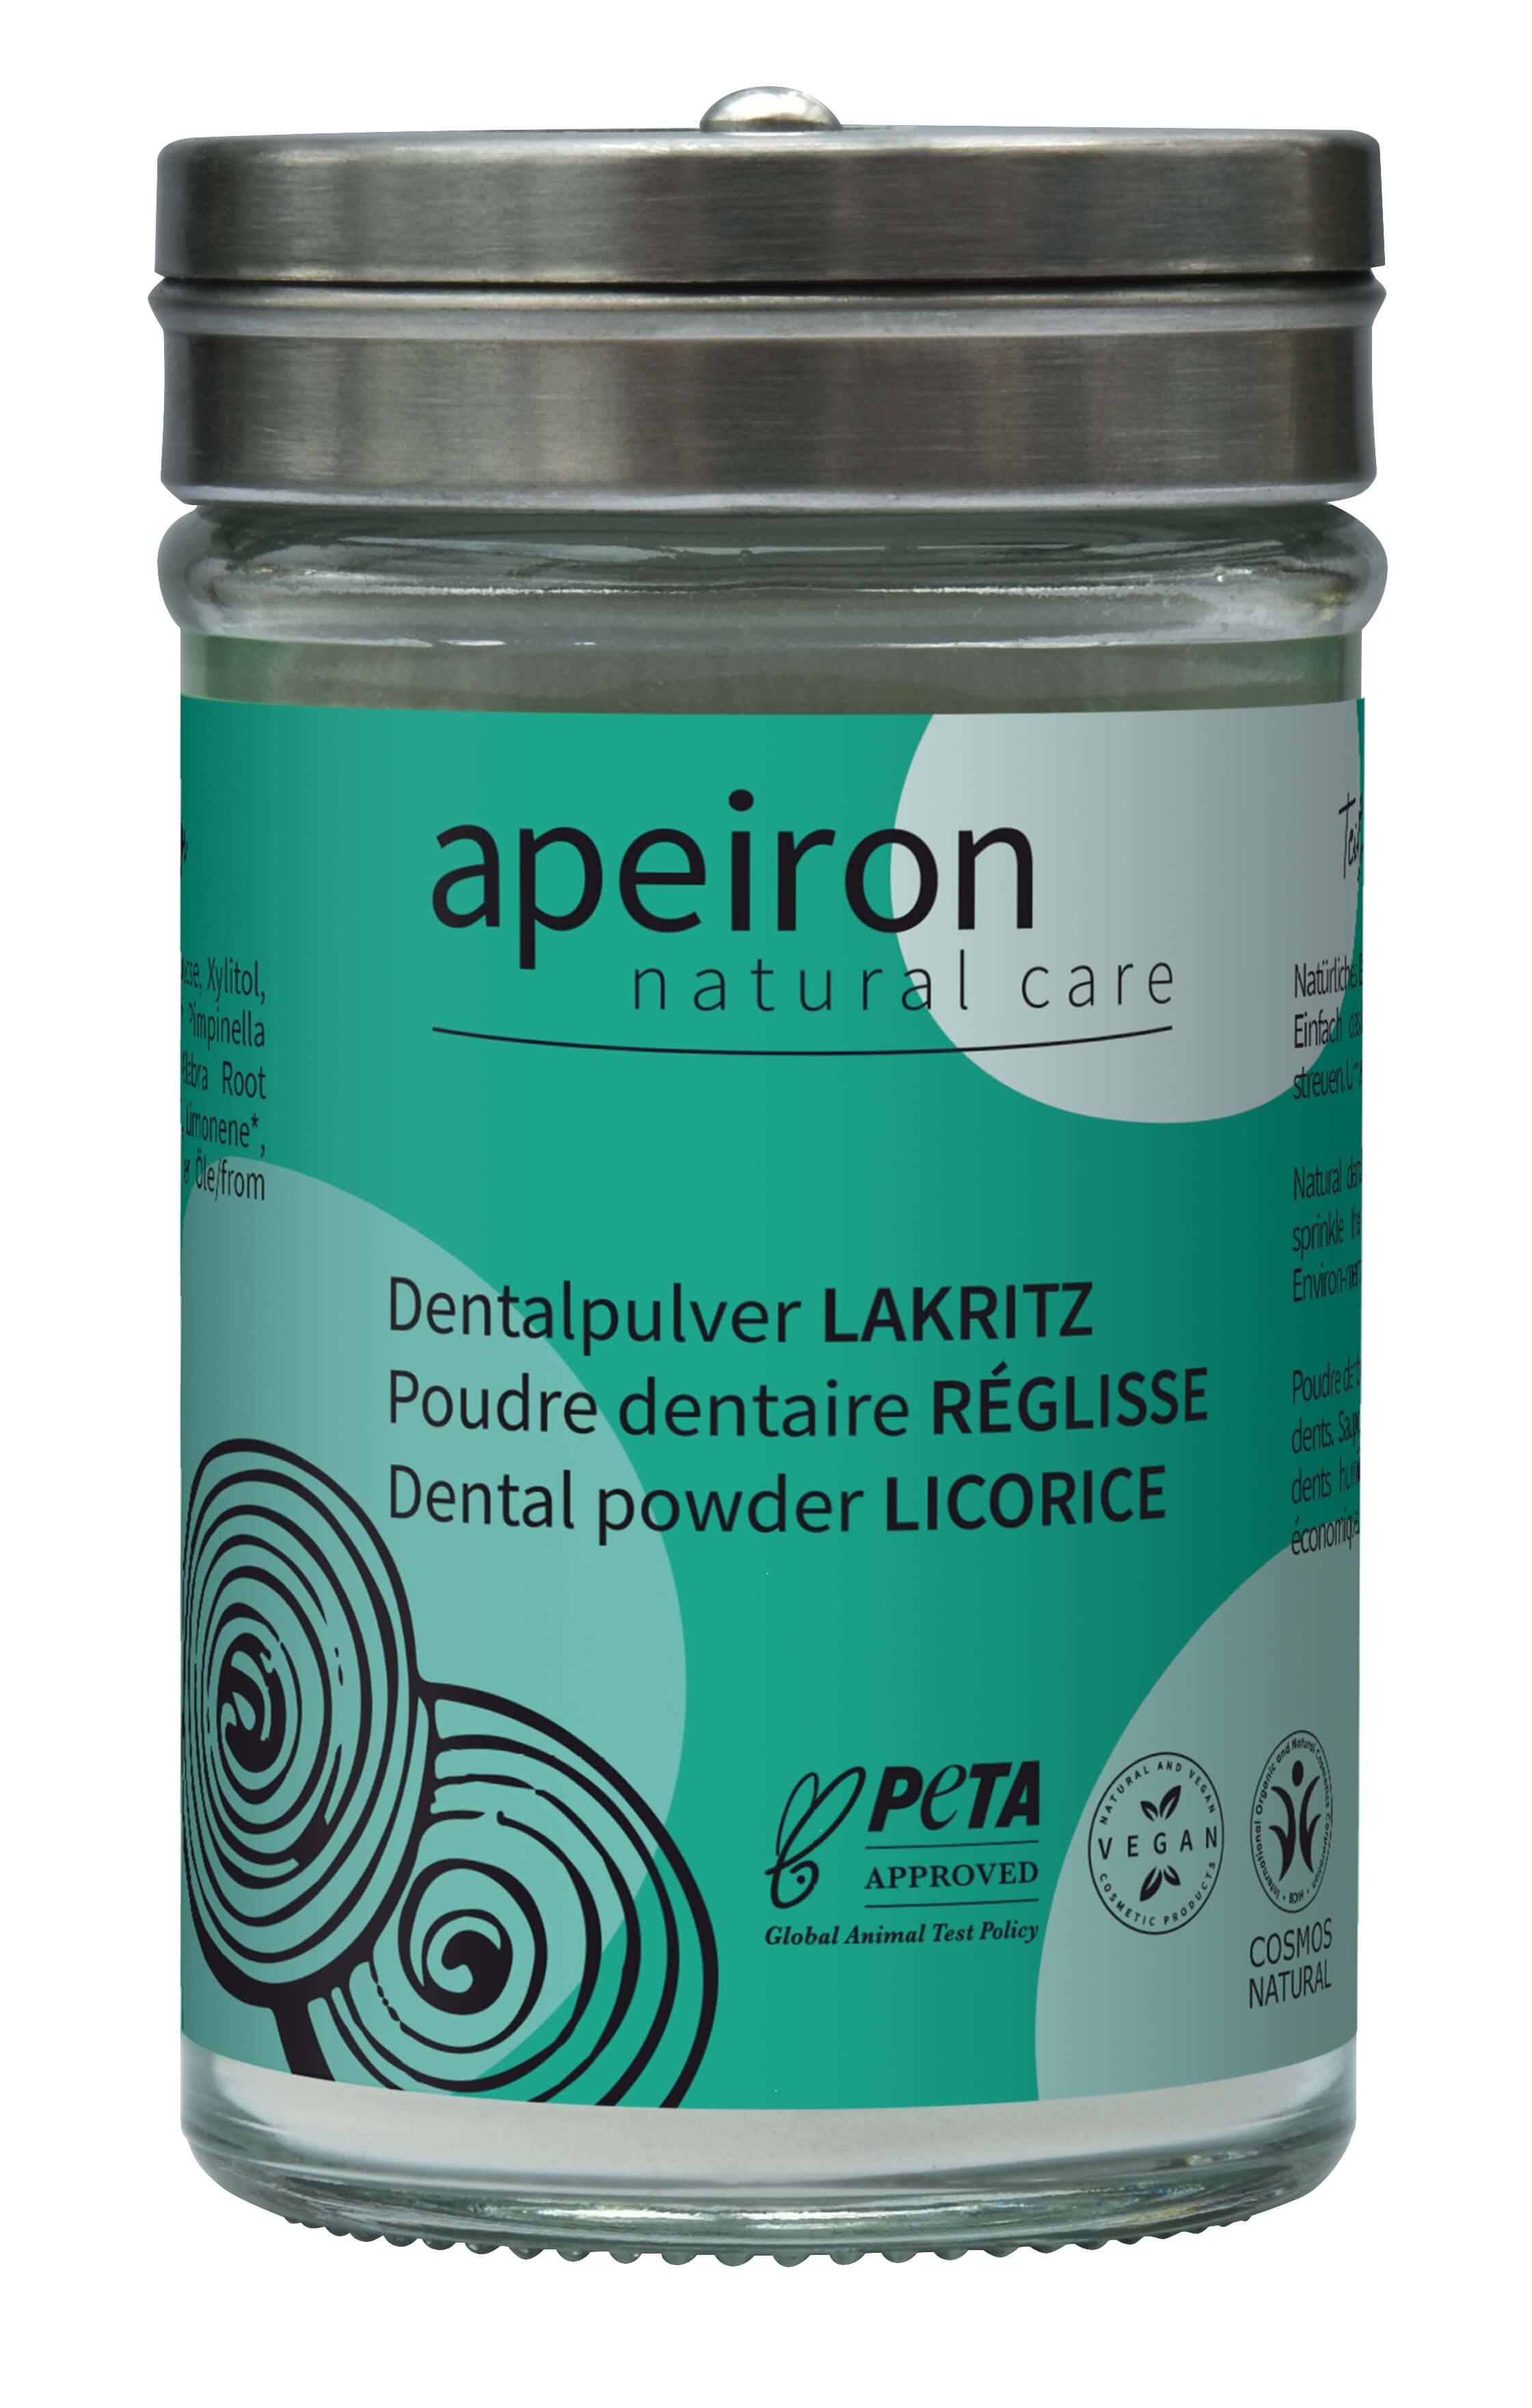 Dental Powder Licorice, Apeiron